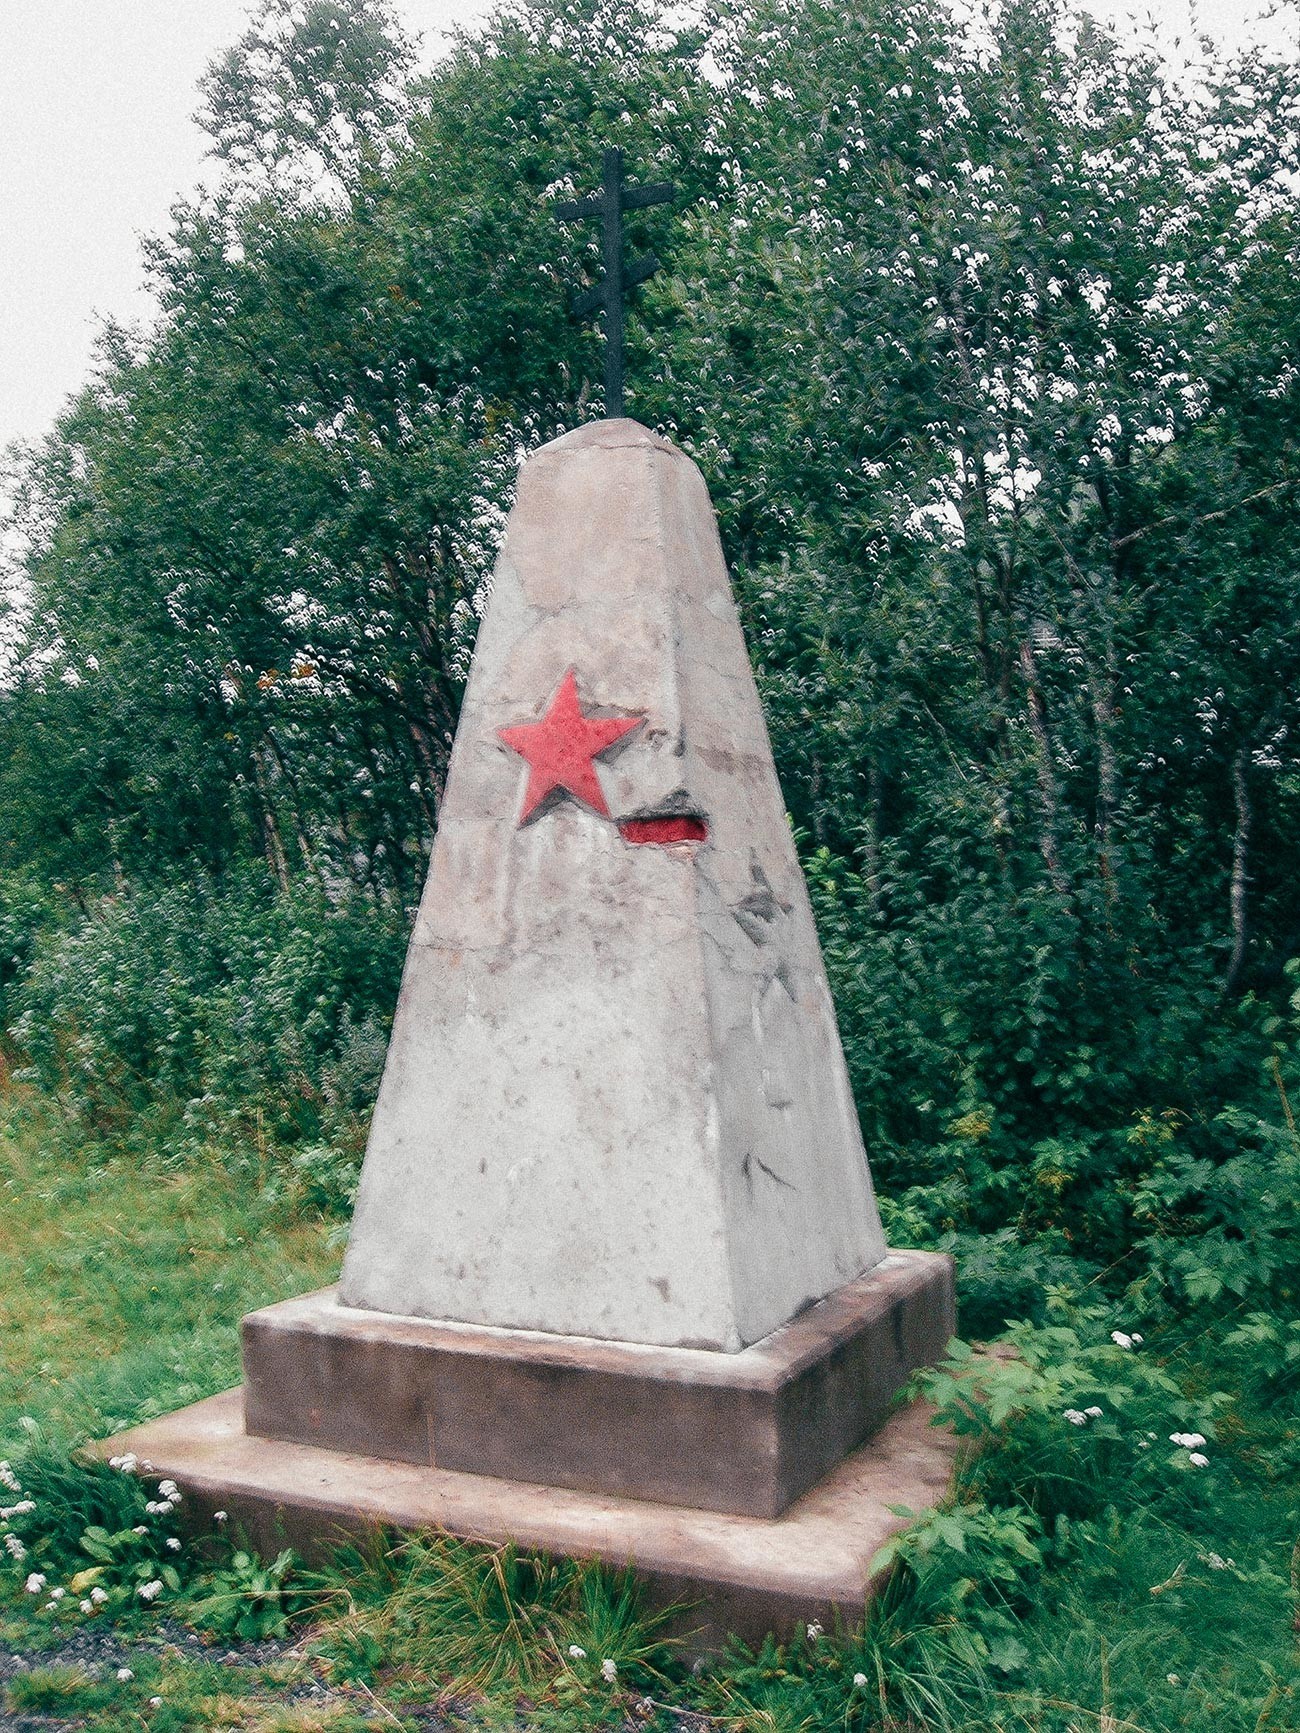 Lapide commemorativa dei circa 5.000 prigionieri sovietici che costruirono la linea di Rana del Nordlandsbanen (“Ferrovia del Nordland”)